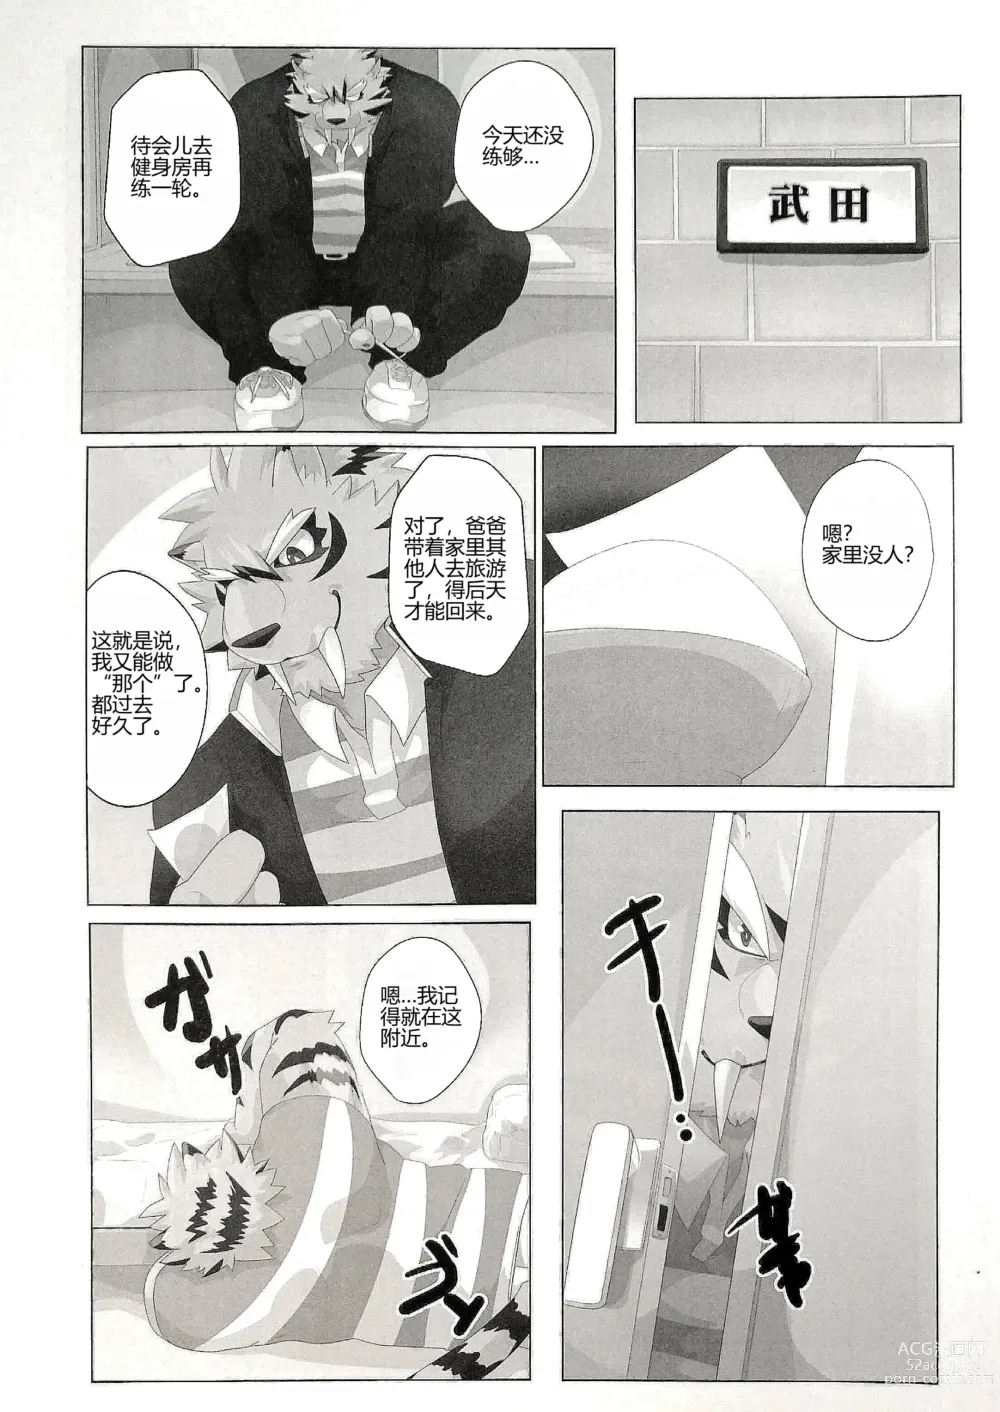 Page 28 of manga 我的父亲!